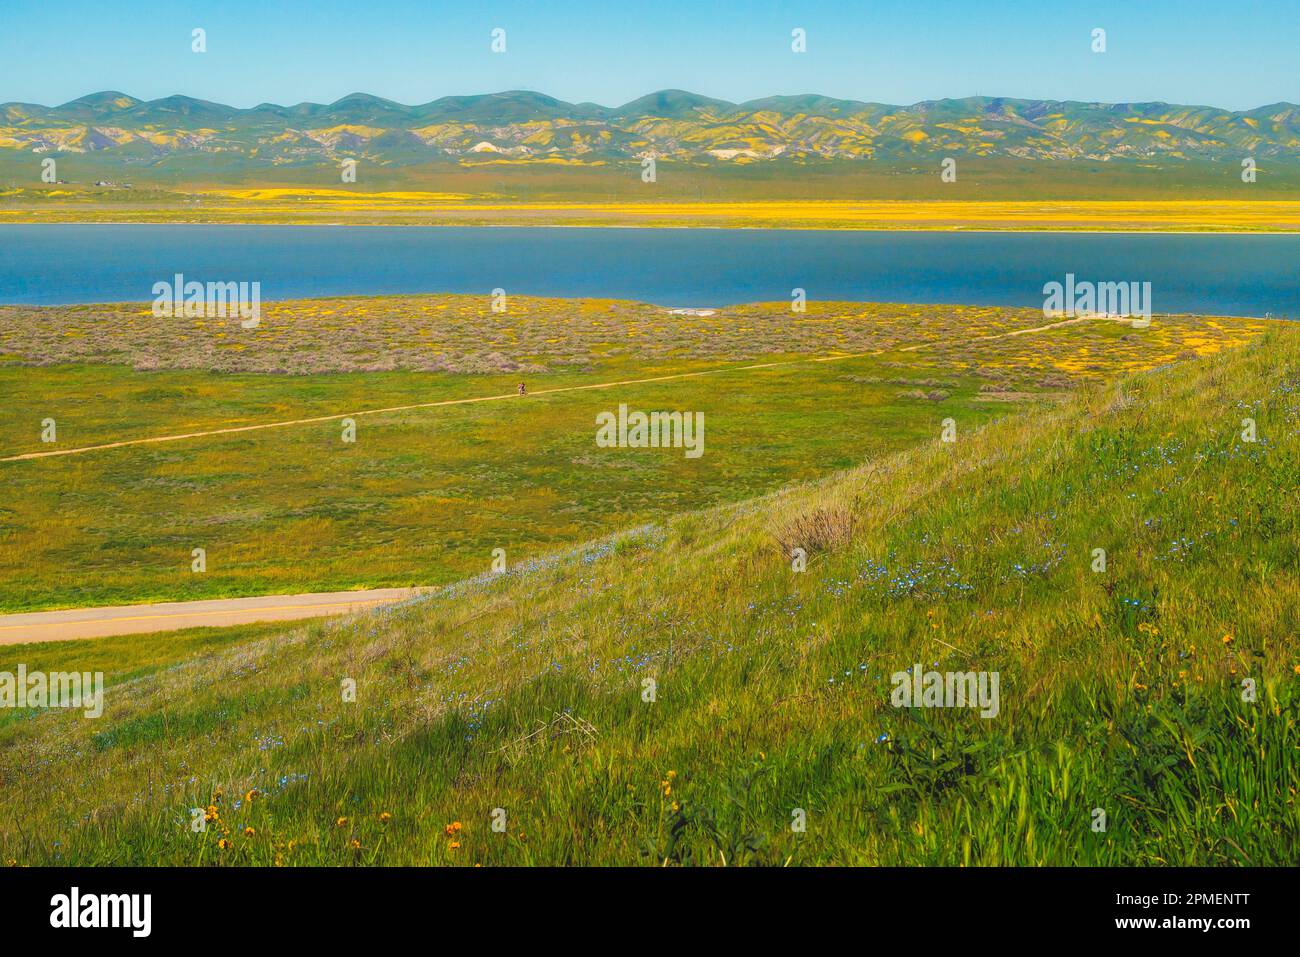 Am Carrizo Plain Ntional Monument im Zentrum von Kalifornien blühen Wildblumen Stockfoto